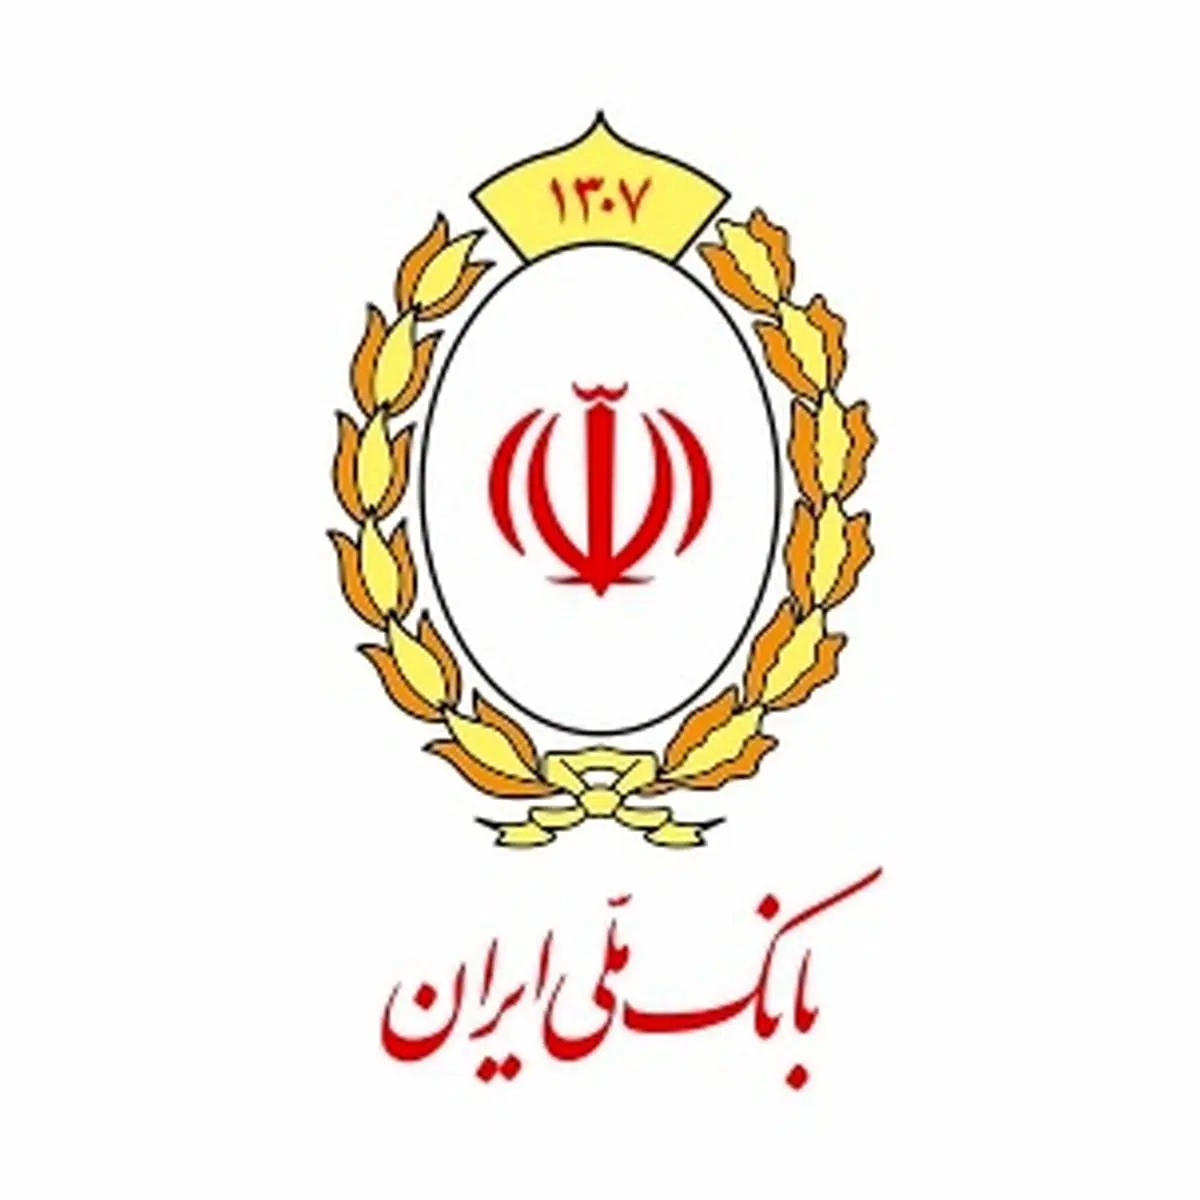 ابلاغ ساعت کاری جدید واحدهای بانک ملی ایران
